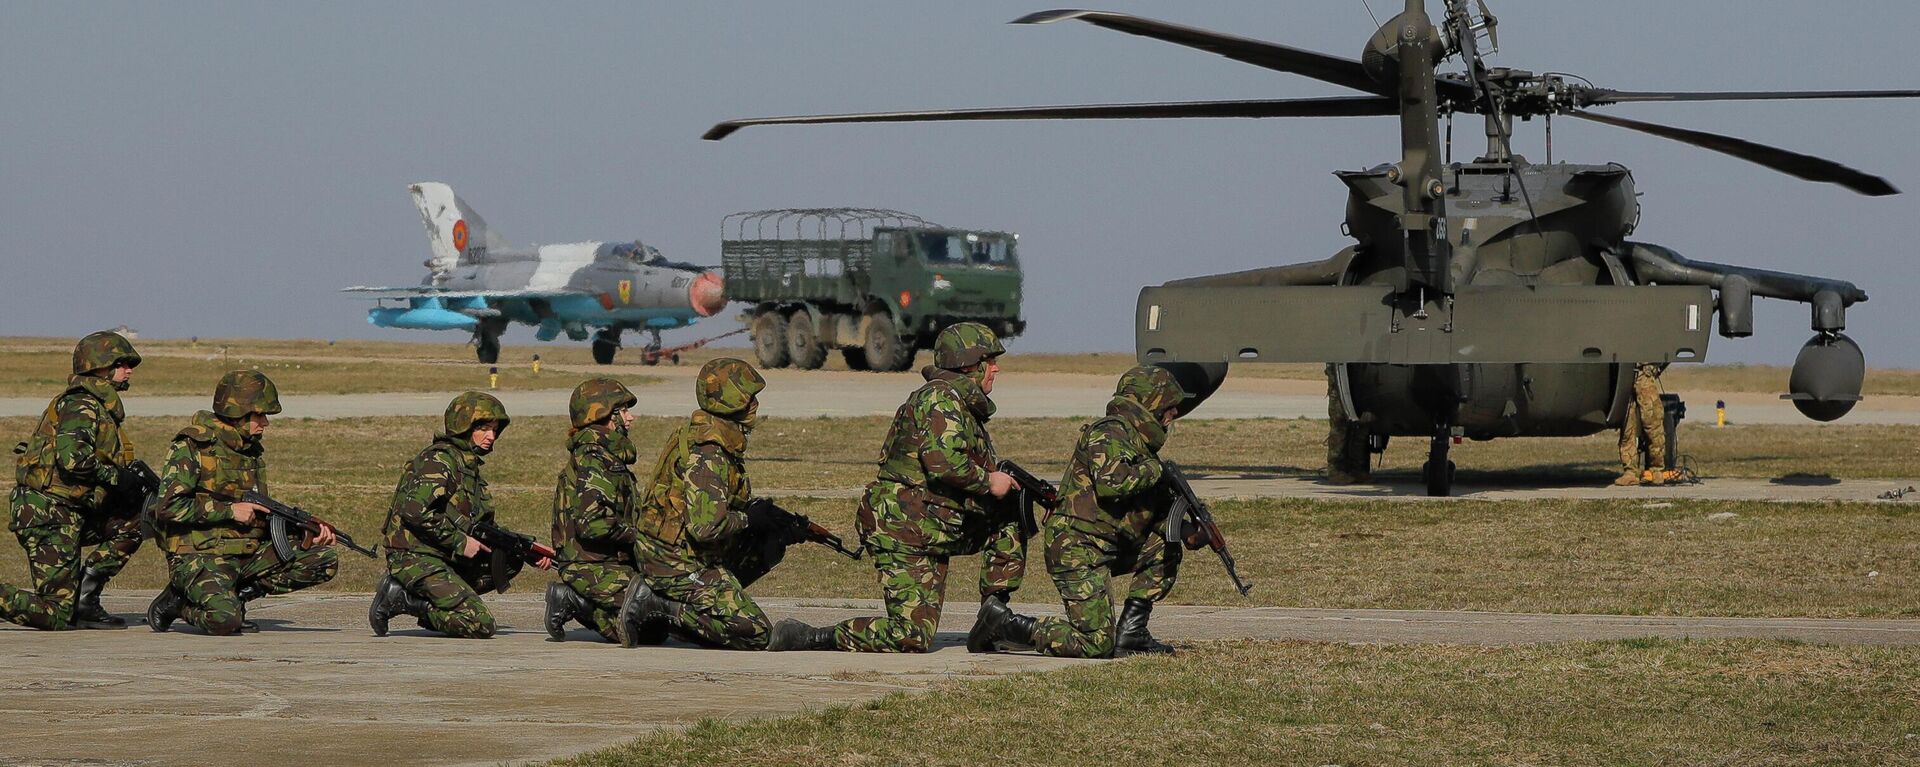 Com um jato de combate MIG 21 e um helicóptero Blackhawk ao fundo, soldados dos EUA participam de exercício militar conjunto com as Forças Armadas romenas na base aérea de Mihail Kogalniceanu, Romênia, 8 de março de 2017 - Sputnik Brasil, 1920, 14.07.2022